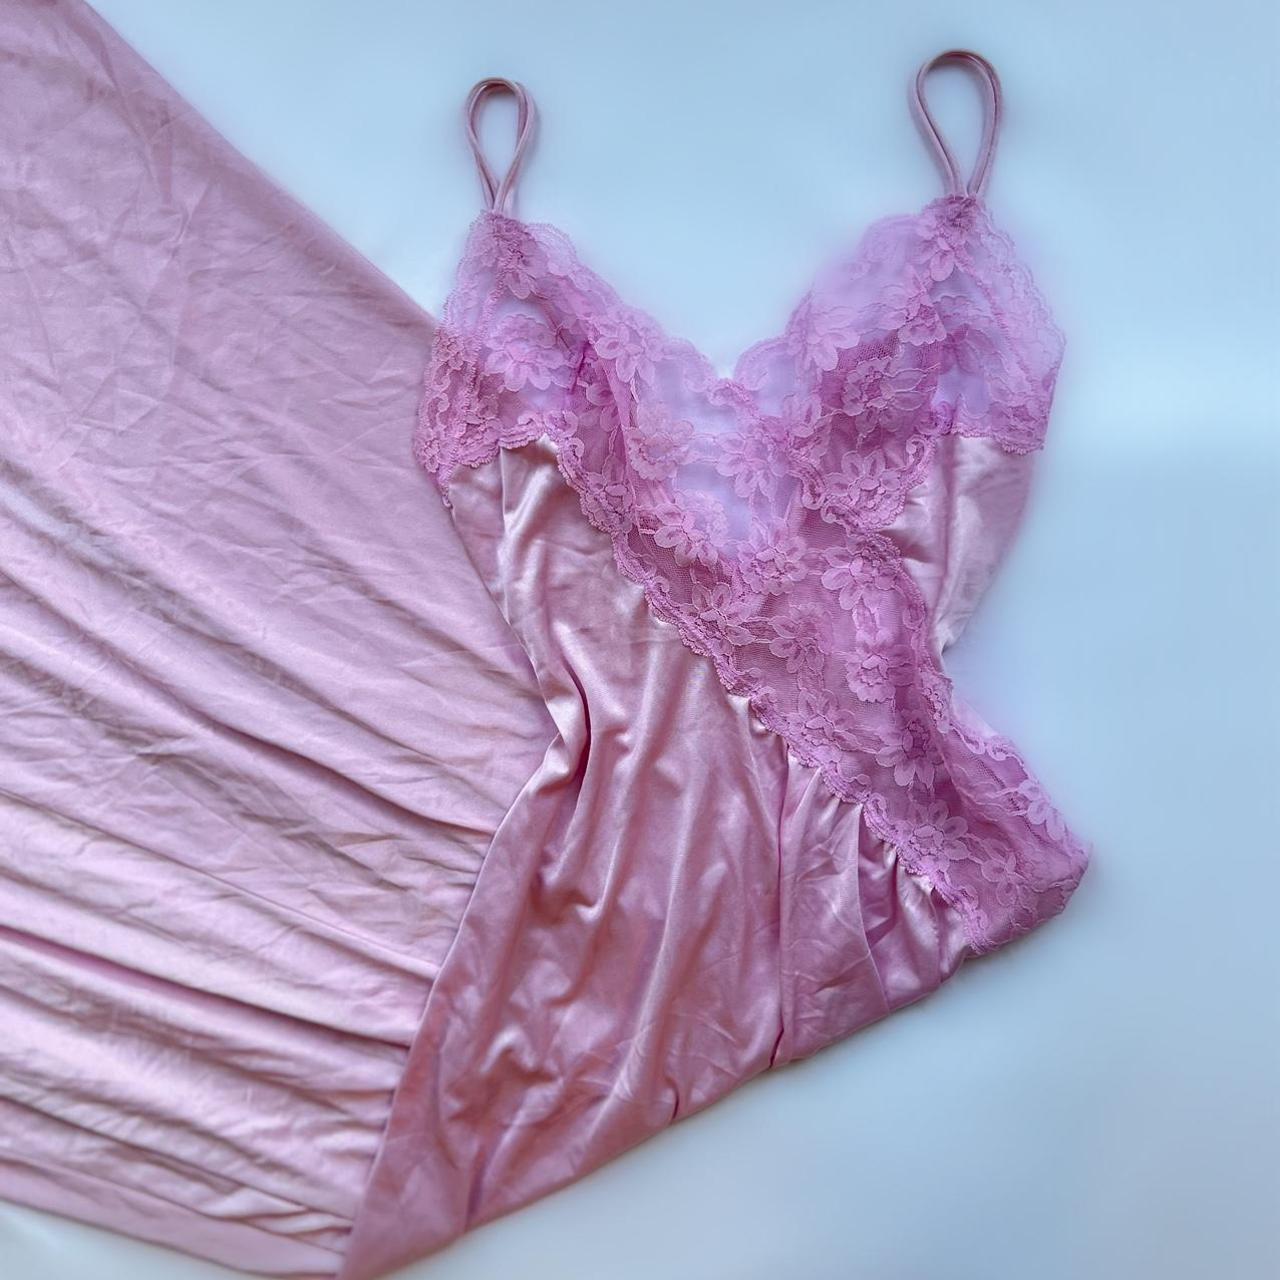 Vintage pink lace lingerie slip dress 44” long... - Depop